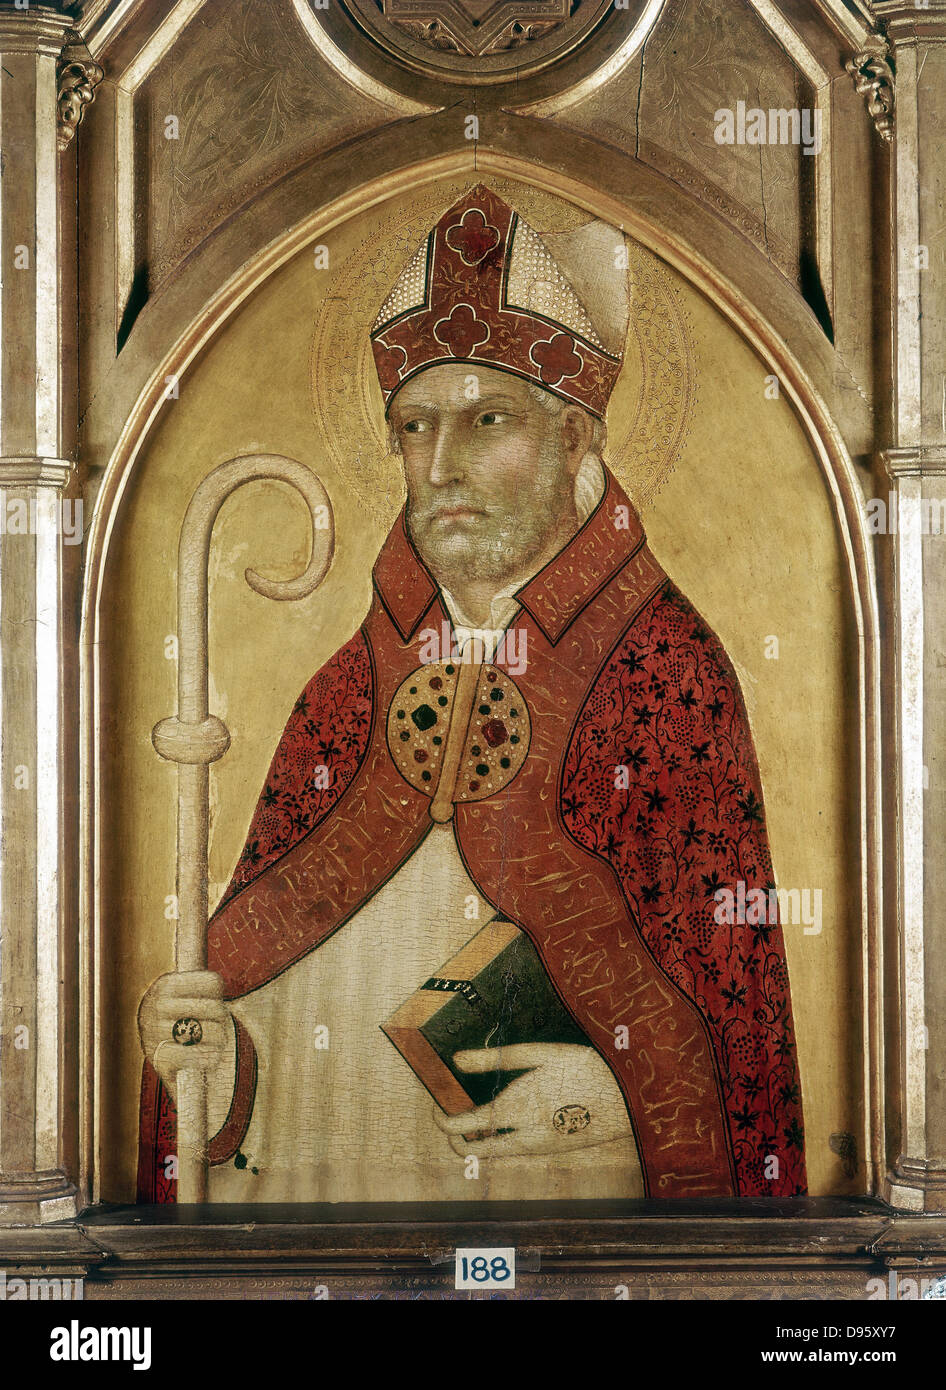 Der hl. Augustinus von Hippo (354-430), einer der großen Väter der frühen christlichen Kirche. Lippo Memmi (c) 1285-1361. Puschkin-museum, Moskau. Stockfoto